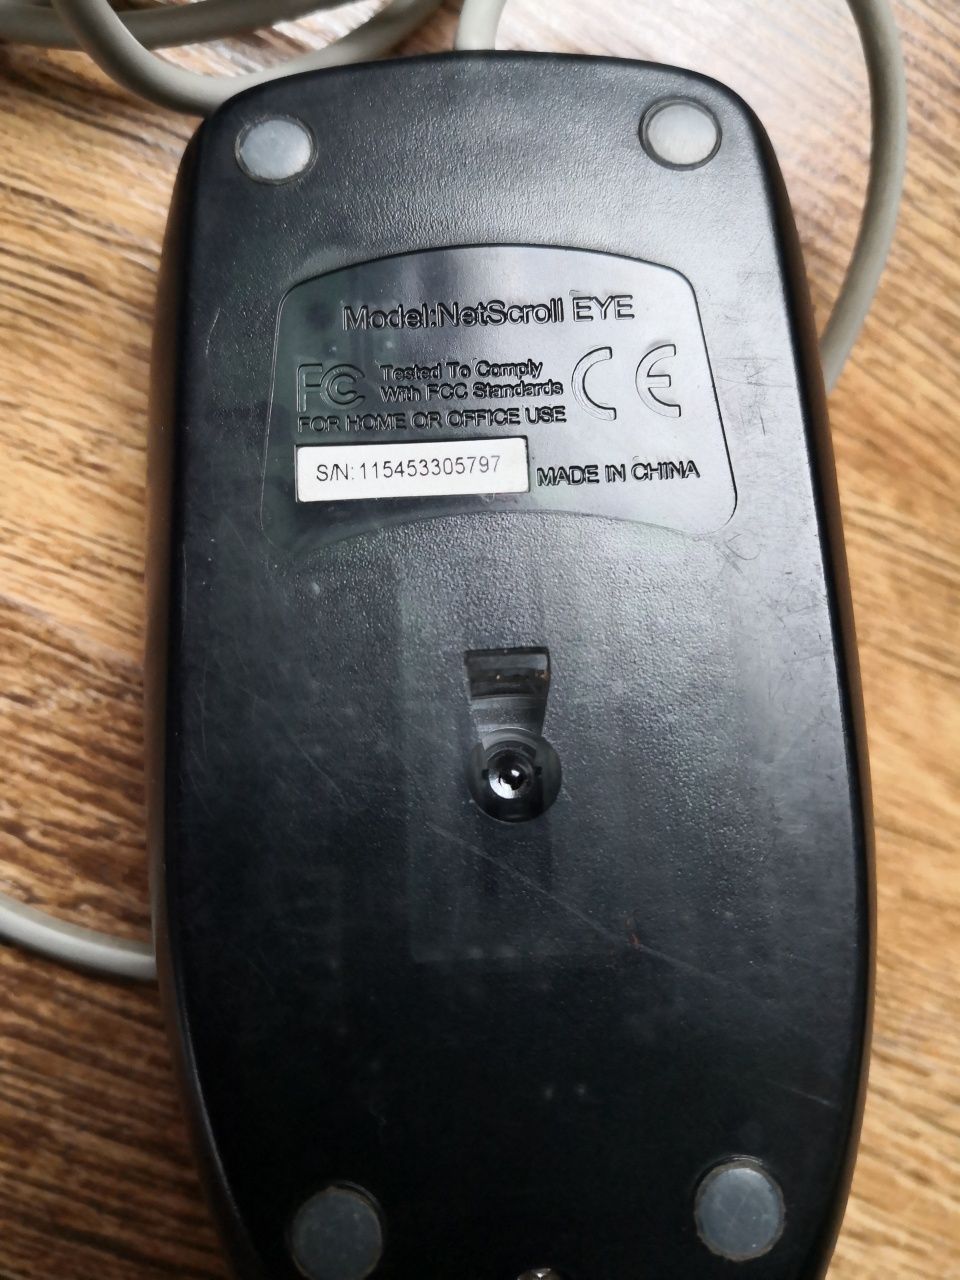 Tastatura și mouse (2 bucati), cu cablu.